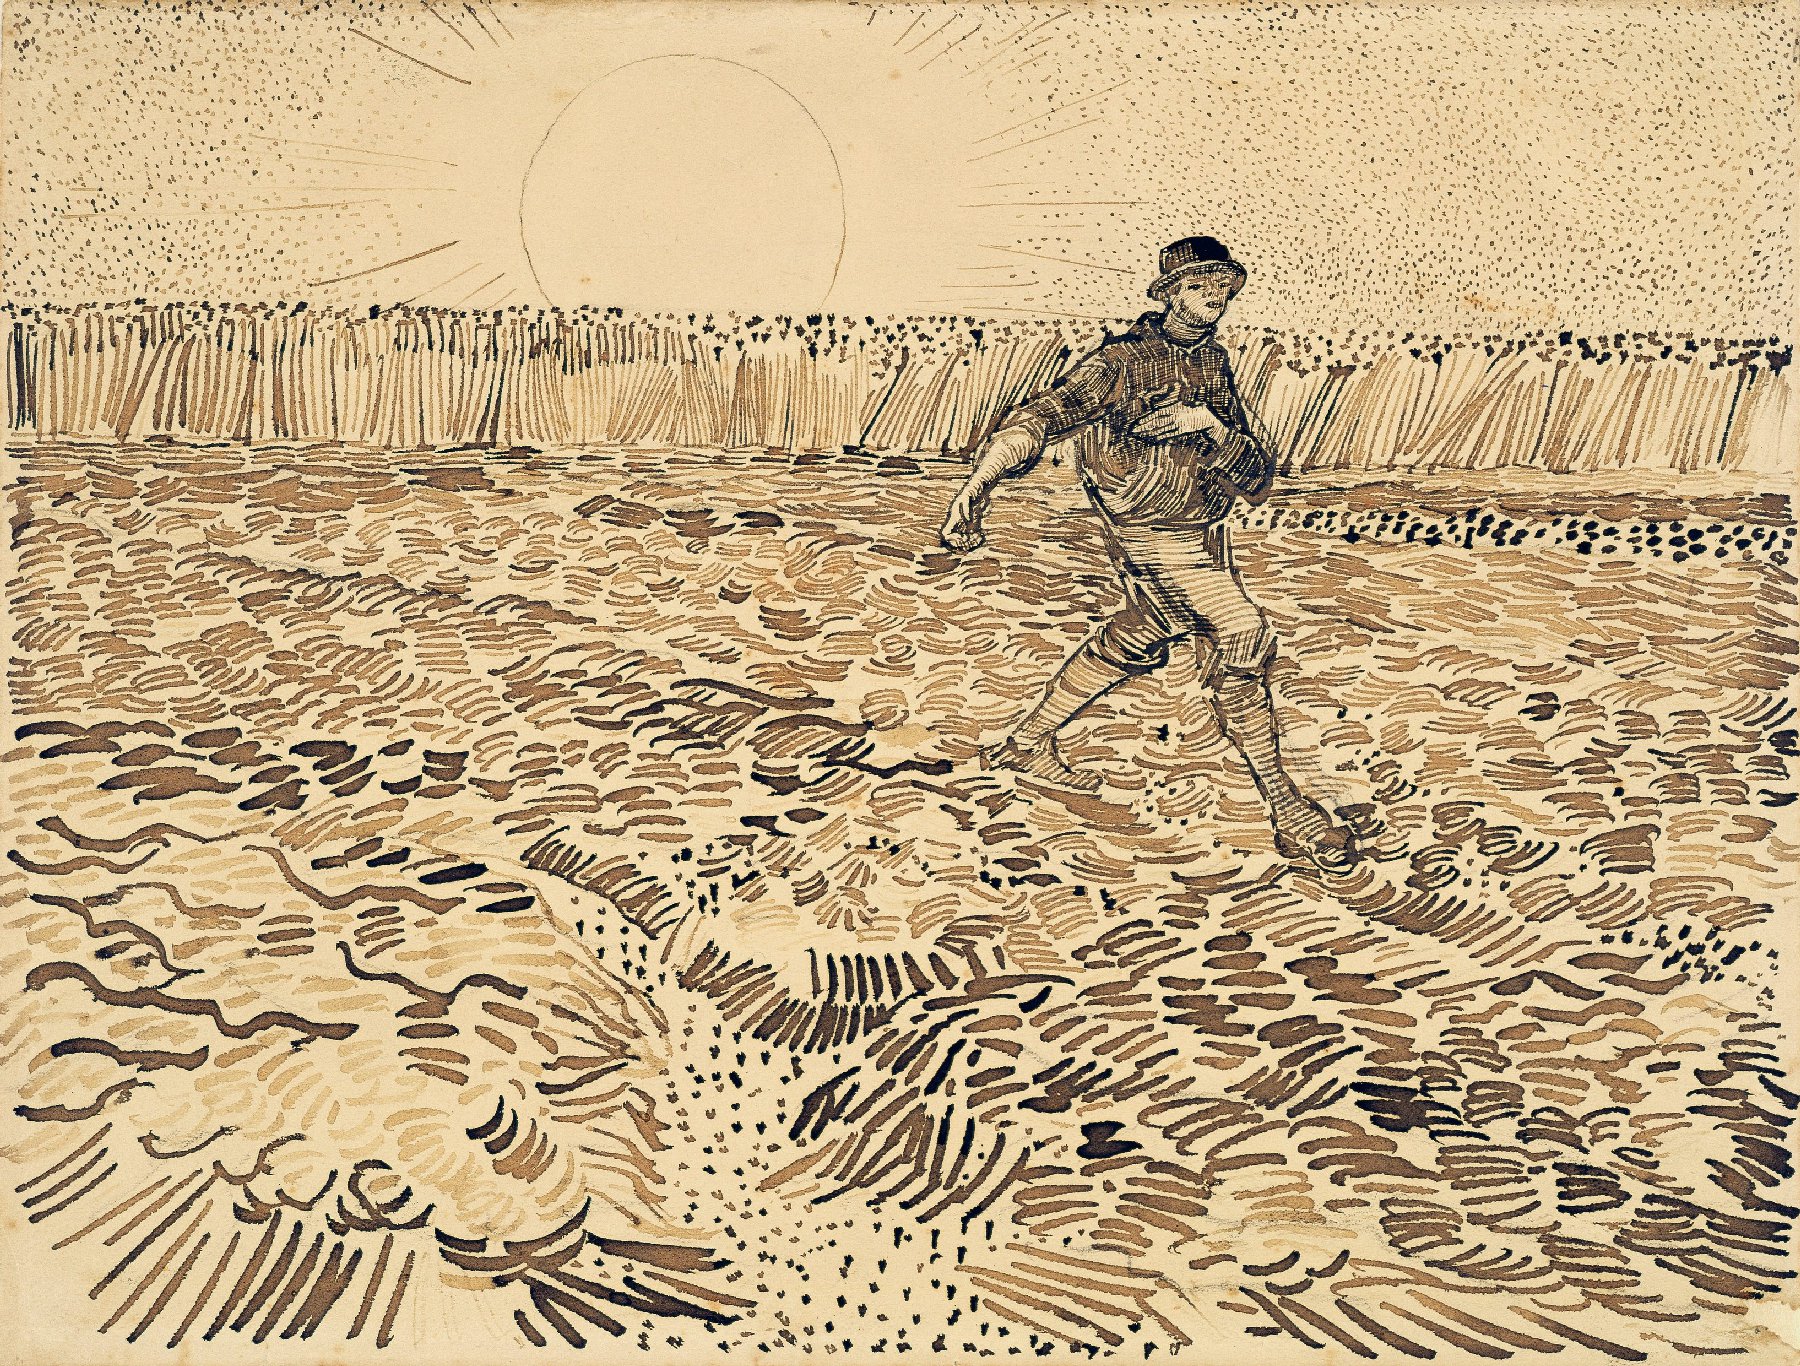 De zaaier Vincent van Gogh (1853 - 1890), Arles, augustus 1888